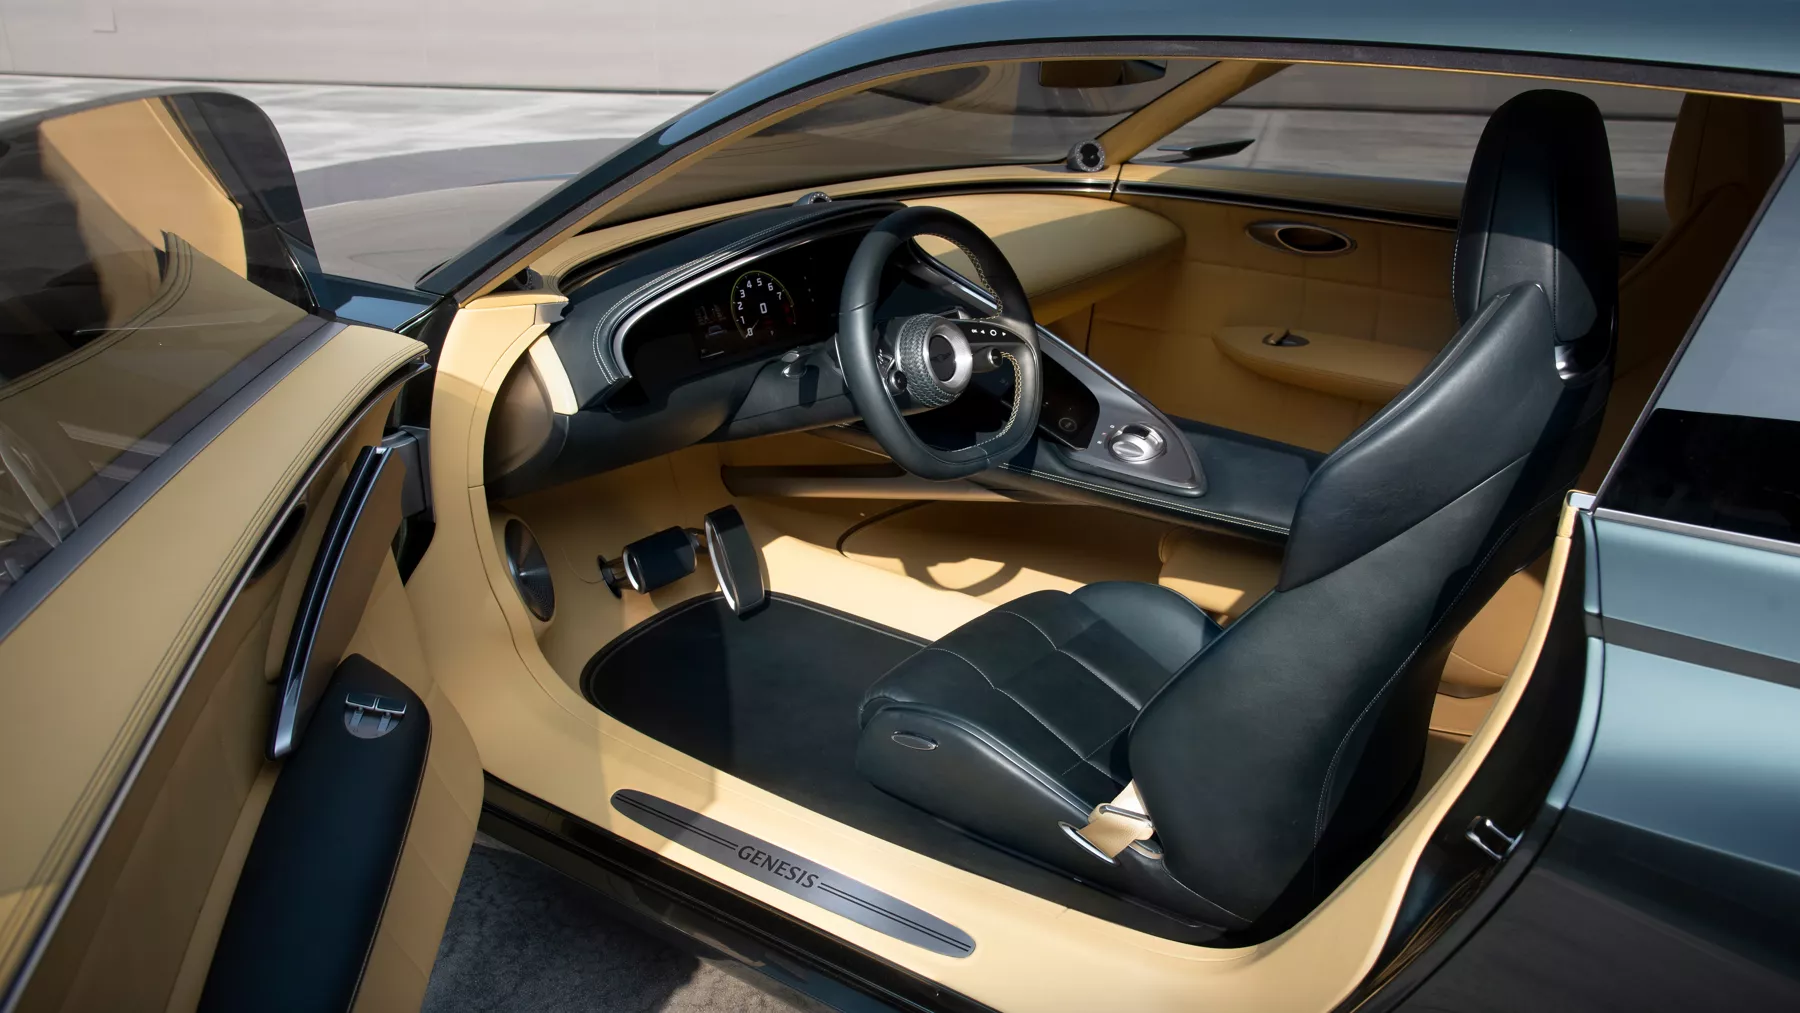 X Speedium Coupe 概念車駕駛座椅和方向盤。